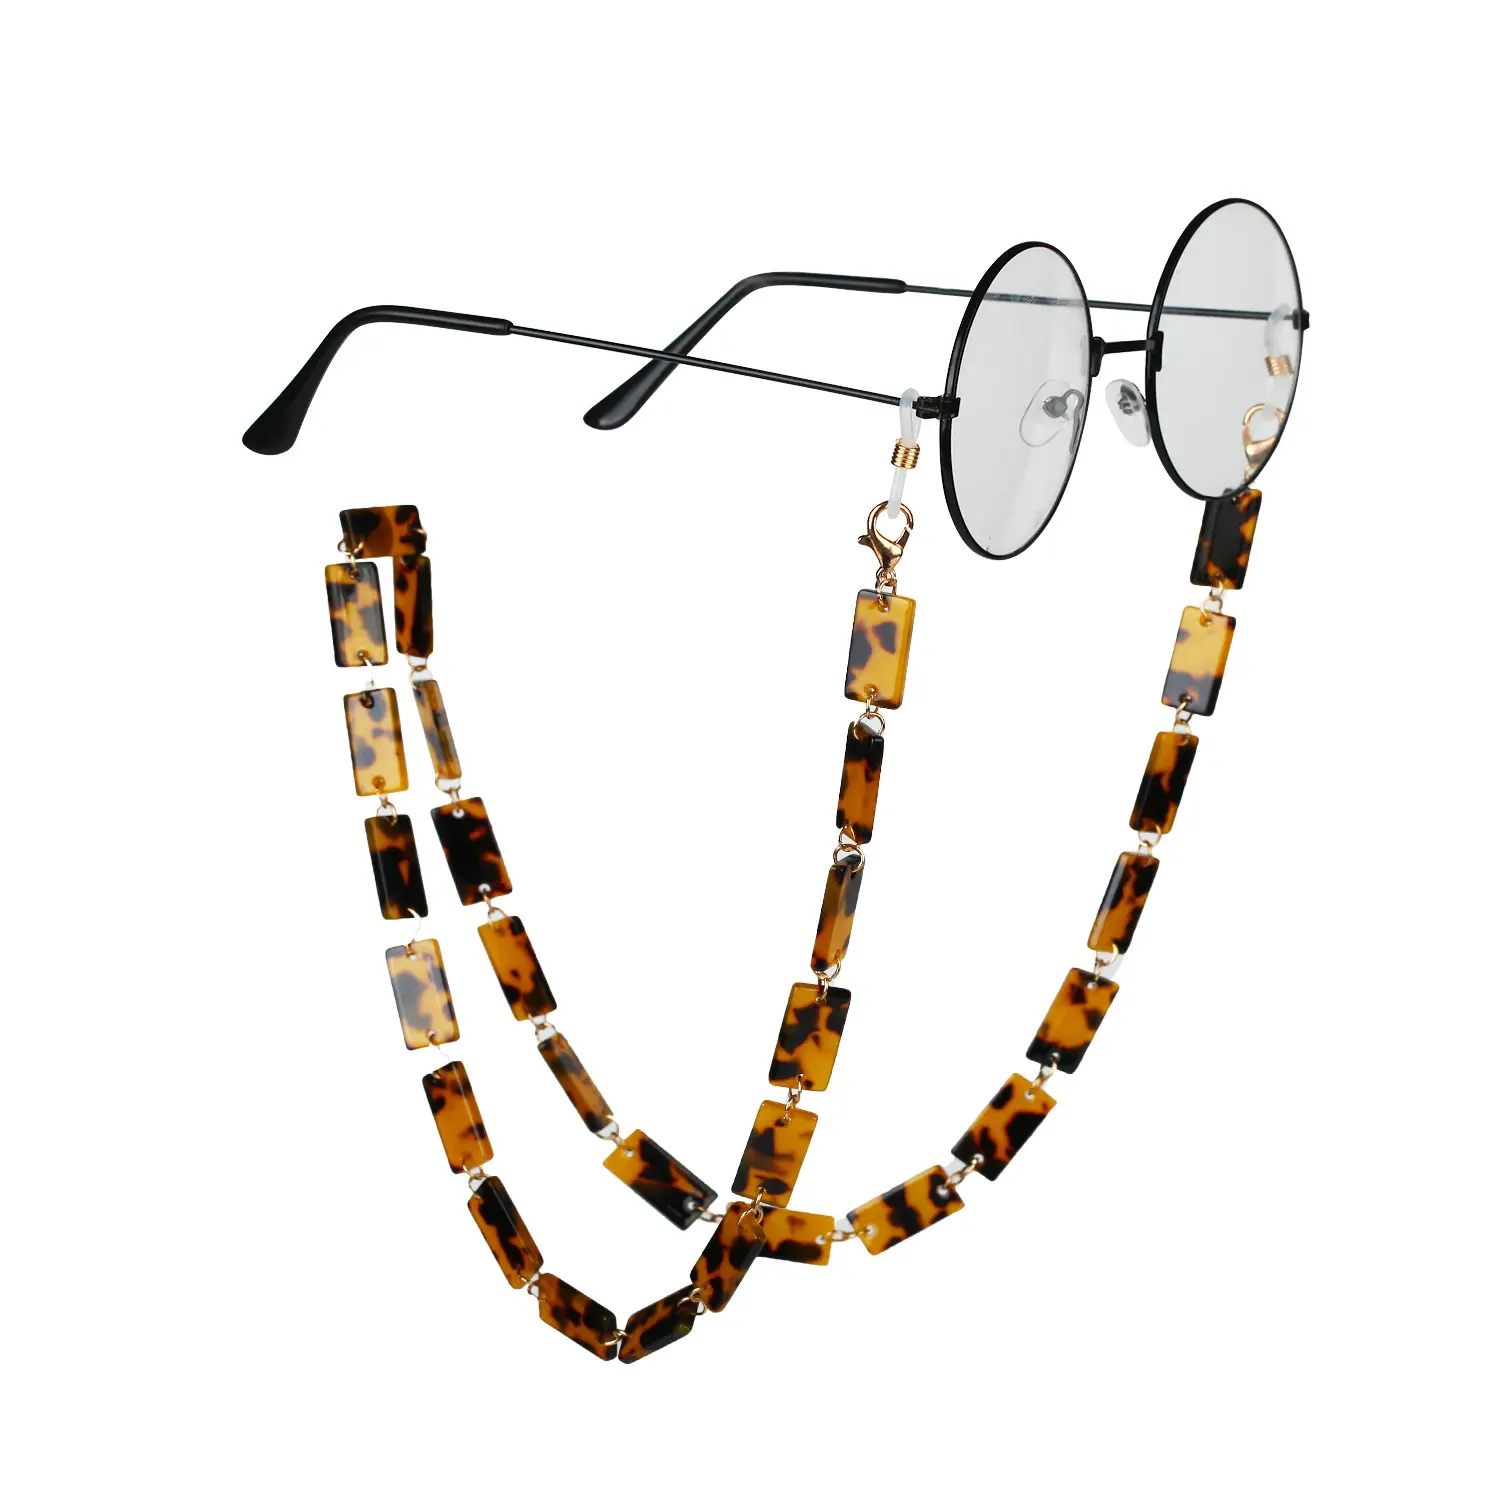 سلسلة نظارات عصرية بحمض الاكسيتيك عبر الحدود عبر التجارة الإلكترونية سلسلة نظارات اكريليك بطباعة على شكل فهد سلسلة نظارات ملونة